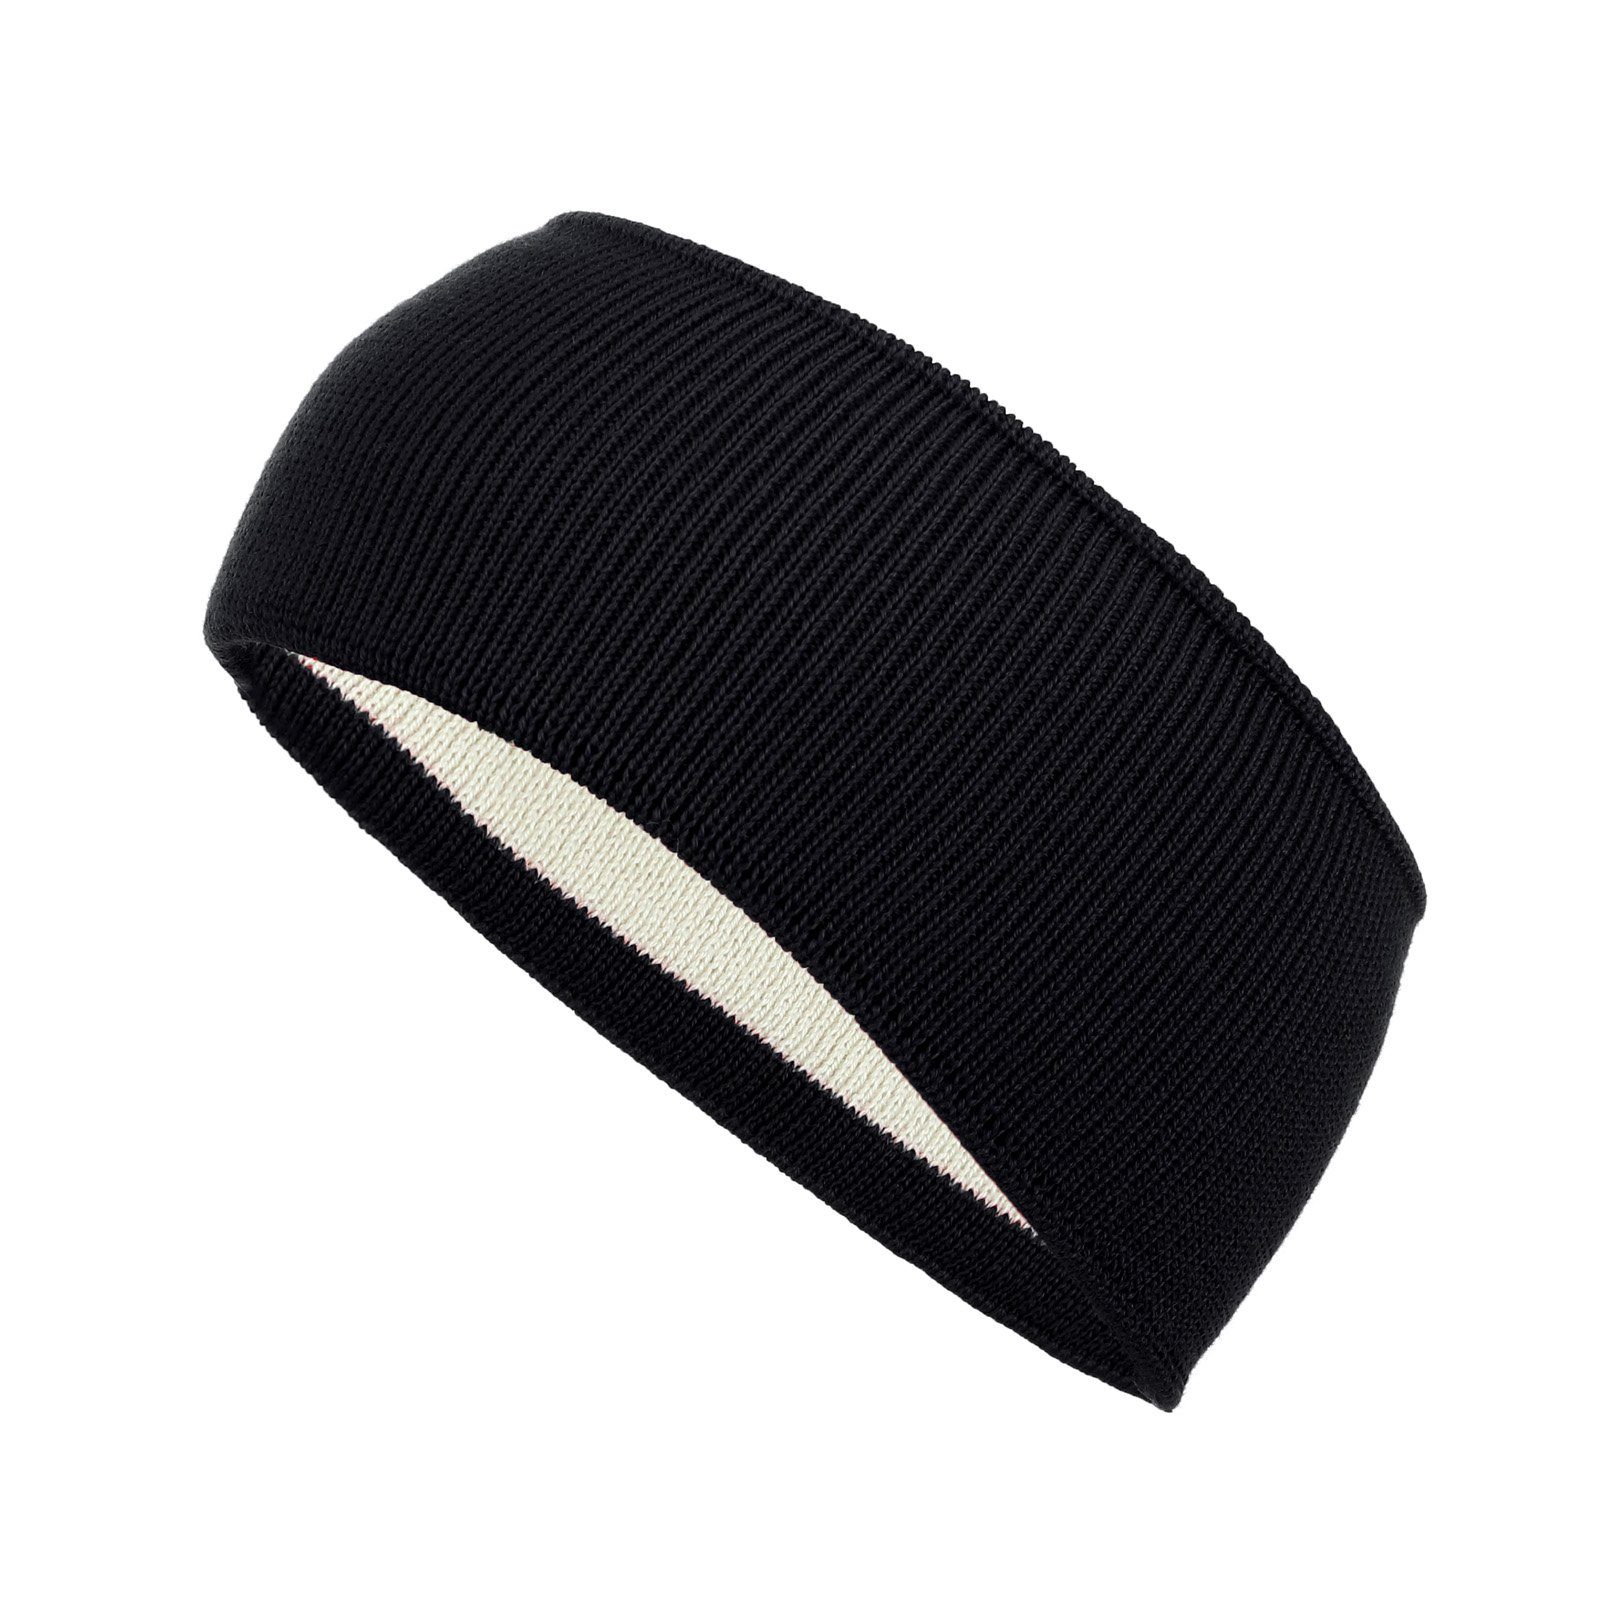 Kopfband Winter modAS (90) Stirnband Ohrenwärmer - Wolle Headband Unisex aus schwarz